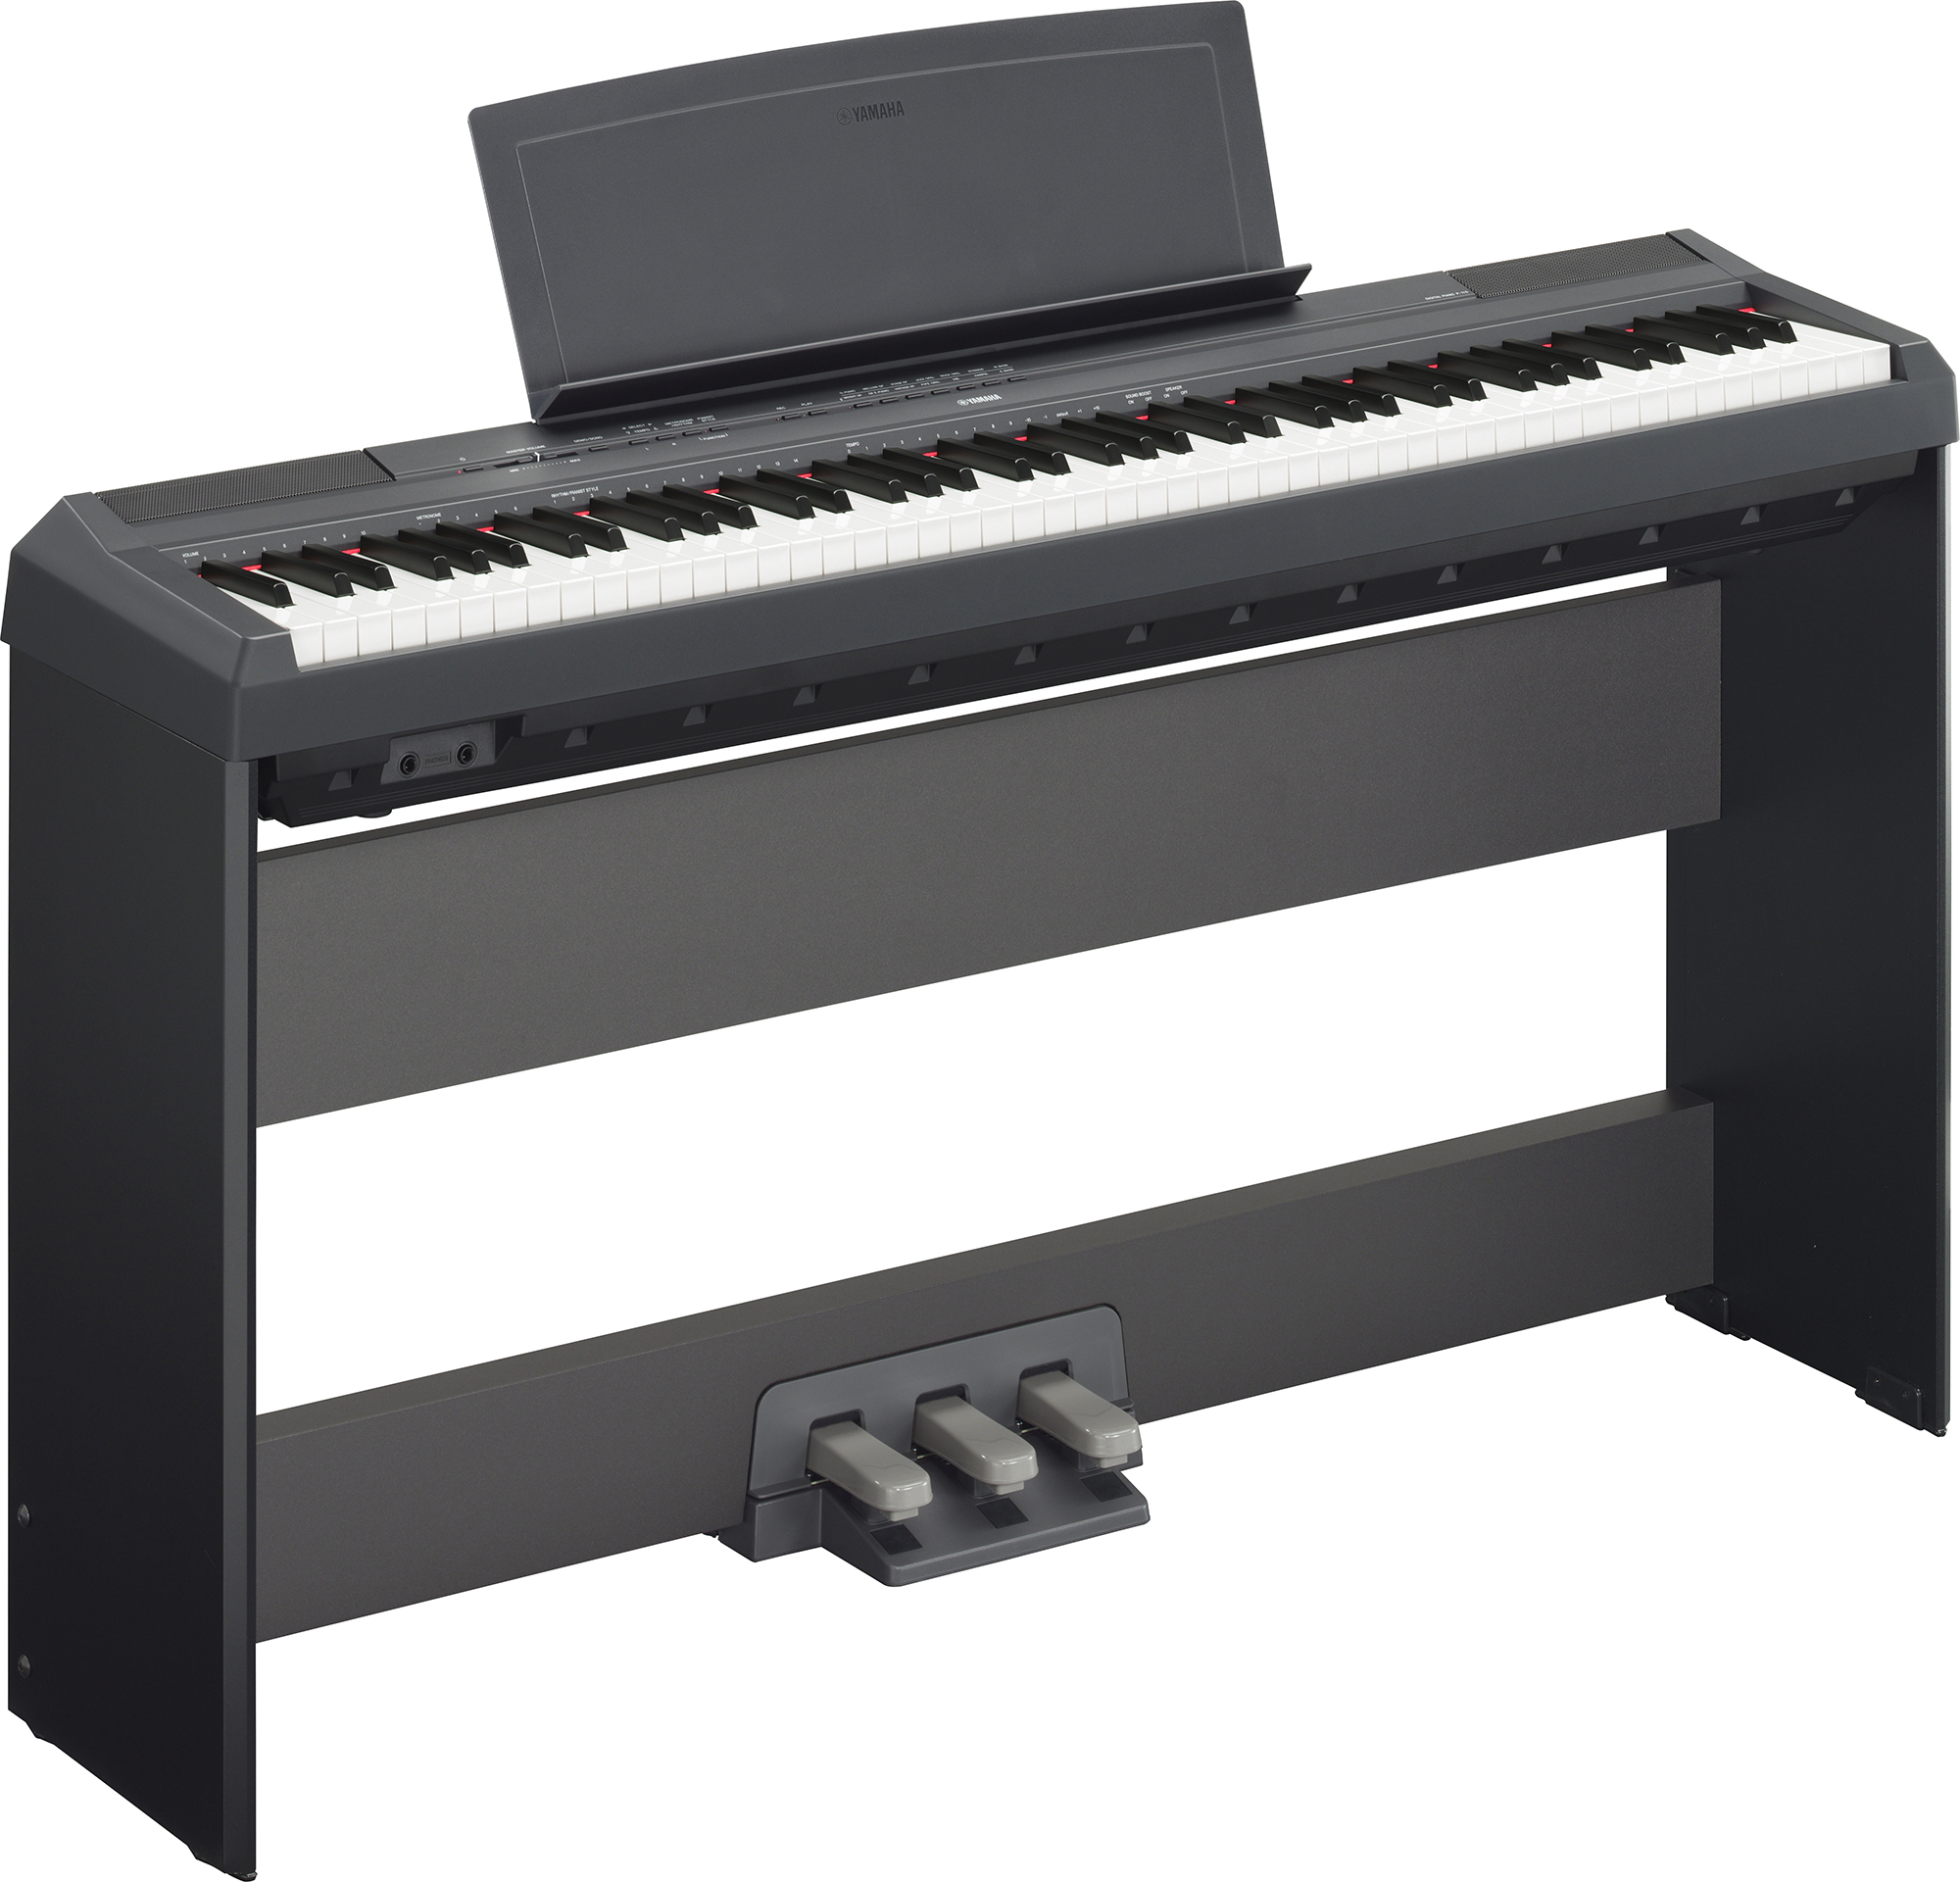 軽量、コンパクトながら本格的なピアノの響きと弾き心地を実現 ヤマハ 電子ピアノ 『P-115B/WH』『P-45B』 - ニュースリリース